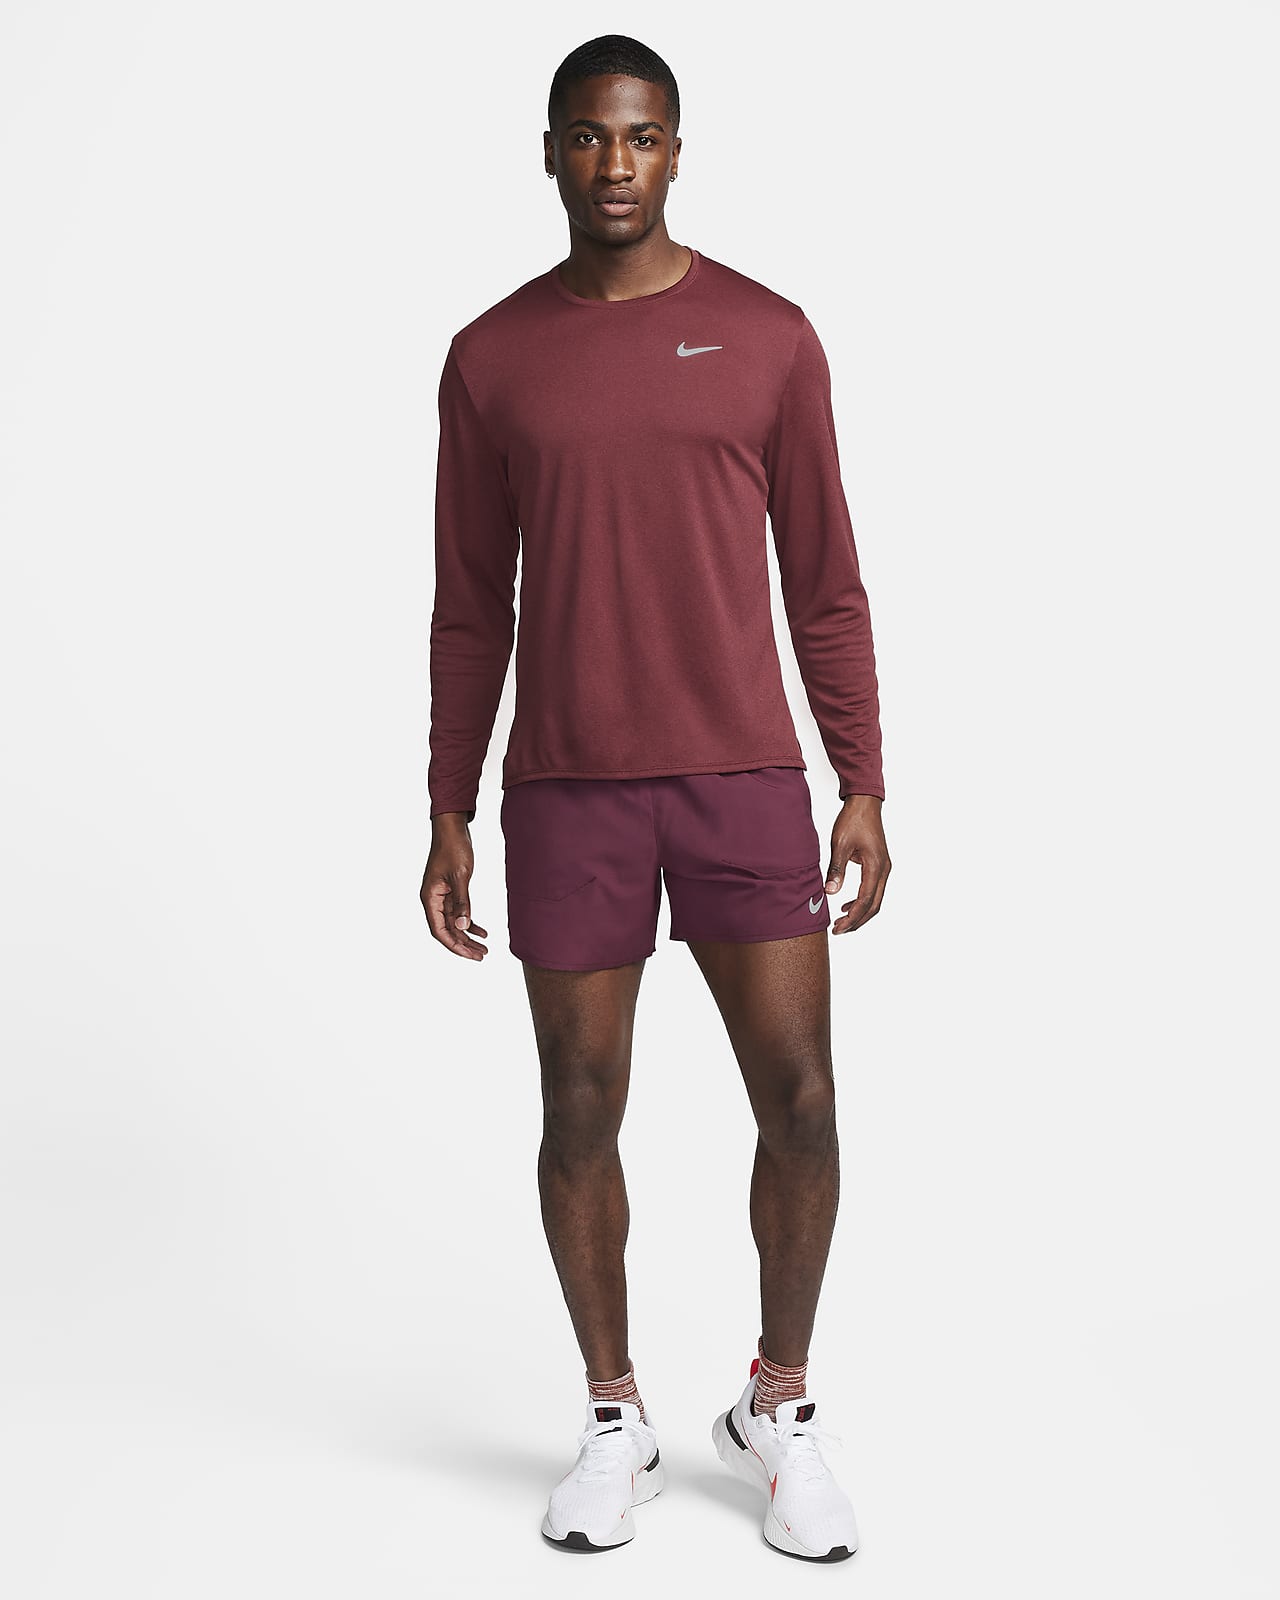 Nike Men's Miler Dri-FIT UV Long-Sleeve Running Top White